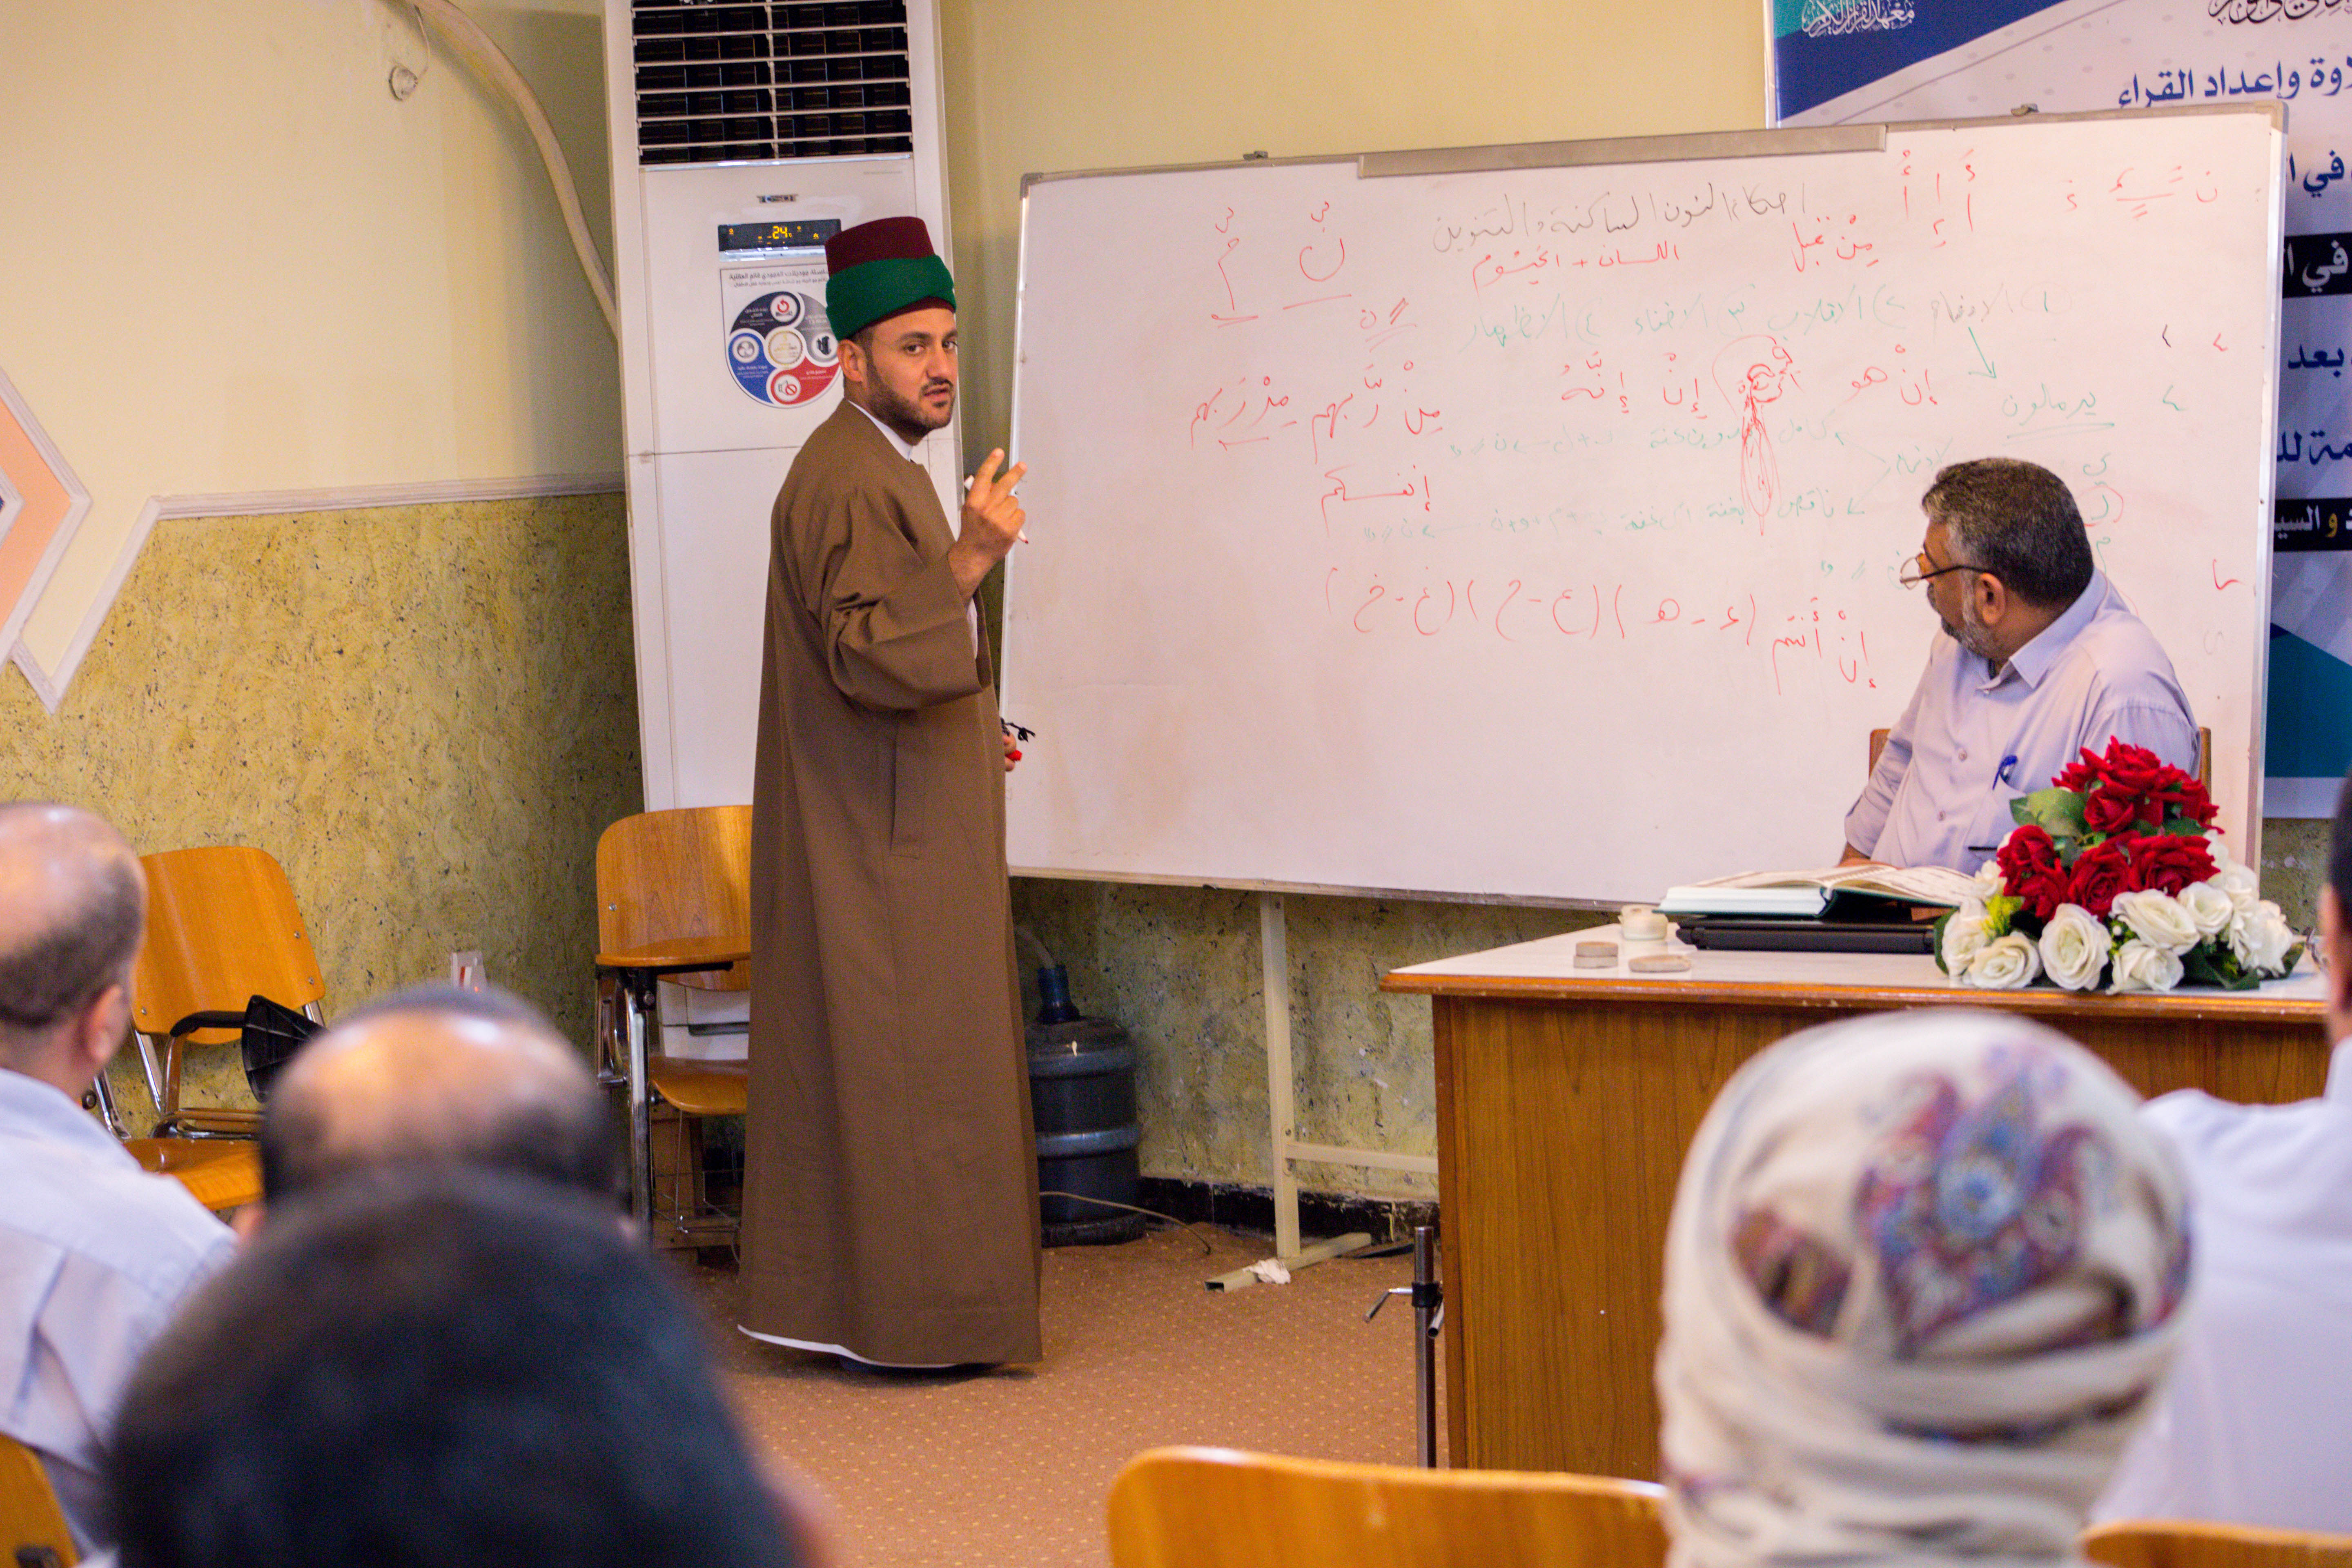 دورات مكثفة وورش عمل يقدمها معهد القرآن الكريم لأساتذة مشروع الدورات القرآنية الصيفية